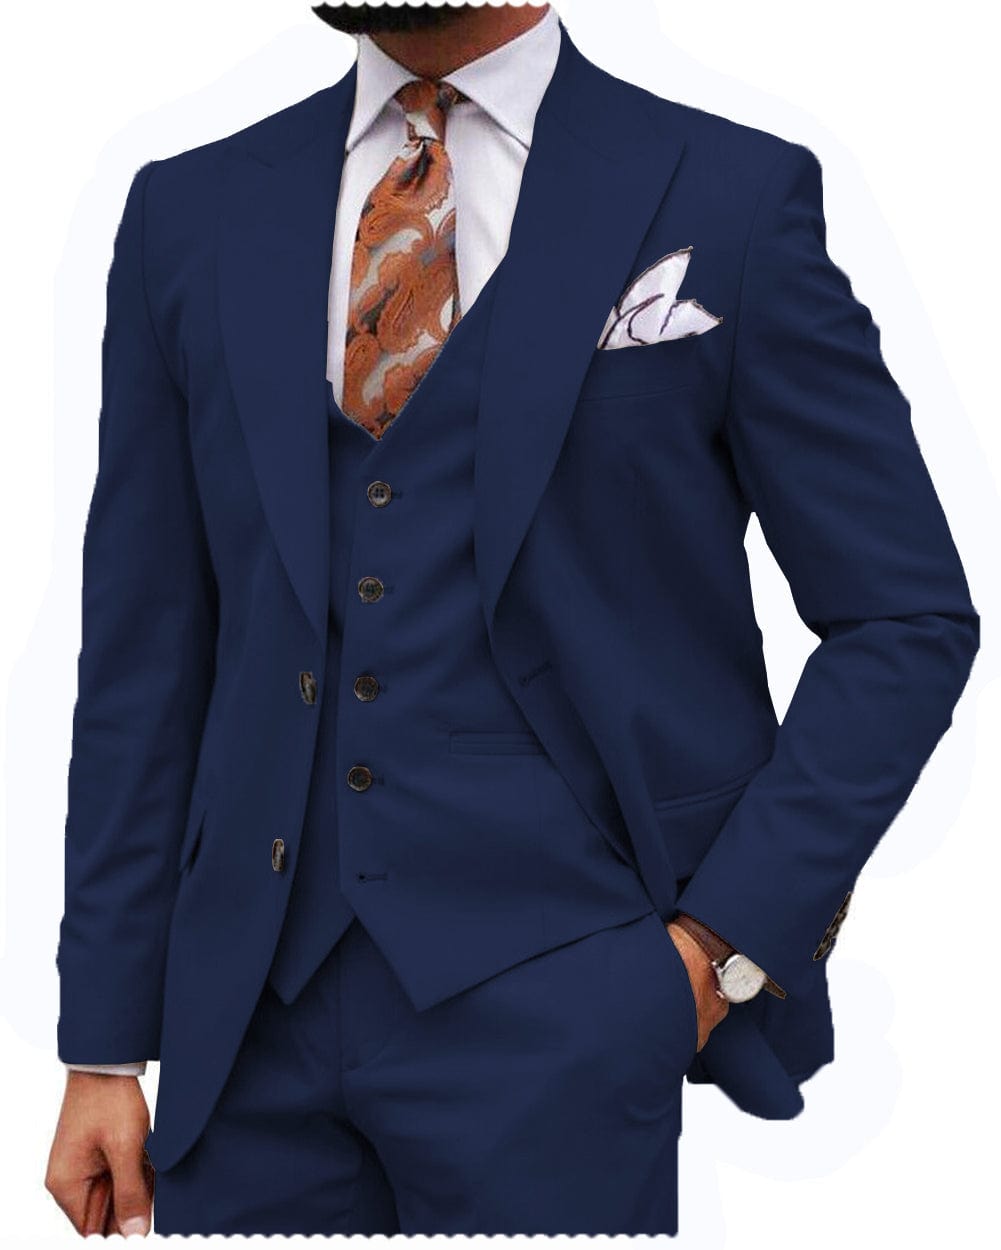 Formal suit, Navy Blue, Slim Fit, Jacket, Vest, Pants and Tie - C3956